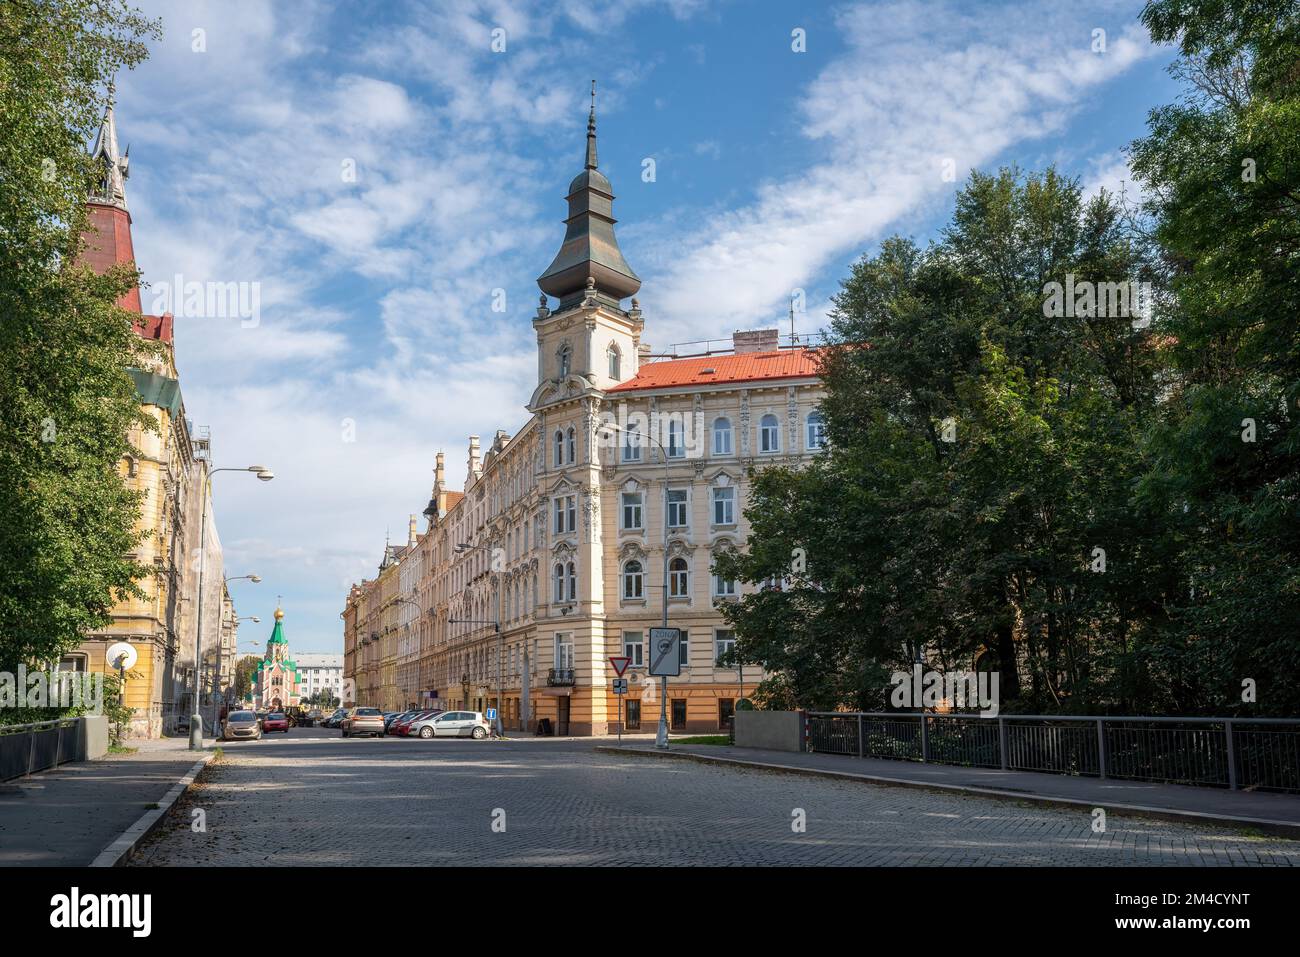 Vue sur la rue d'Olomouc avec église orthodoxe de Saint Gorazd - Olomouc, République Tchèque Banque D'Images